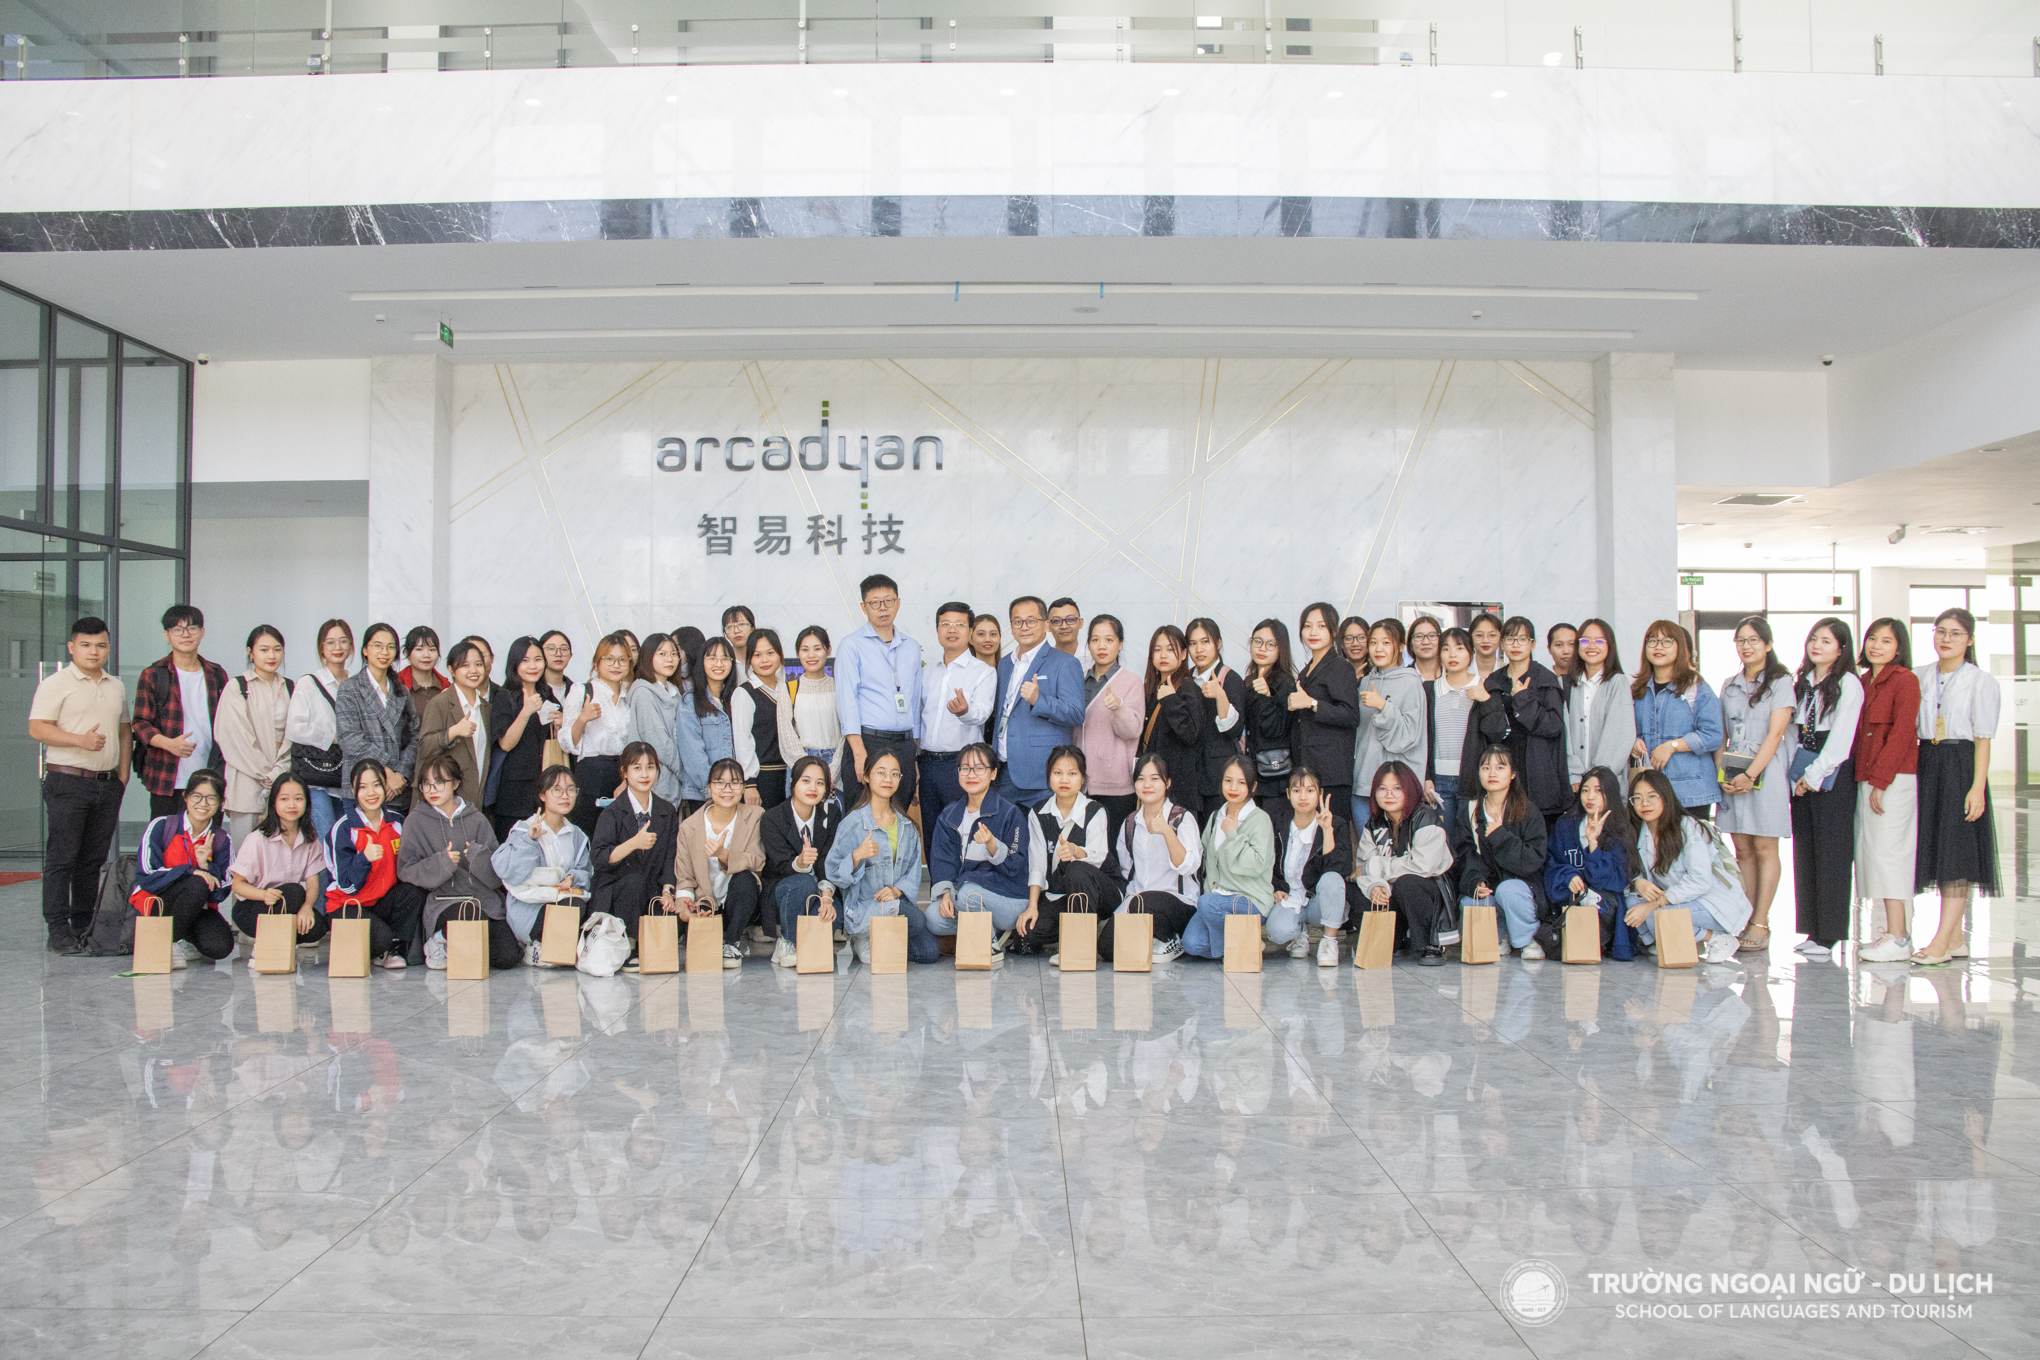 Tham quan Công ty TNH Arcadyan Technology Việt Nam của sinh viên khoá 14 khoa Ngôn ngữ Trung Quốc